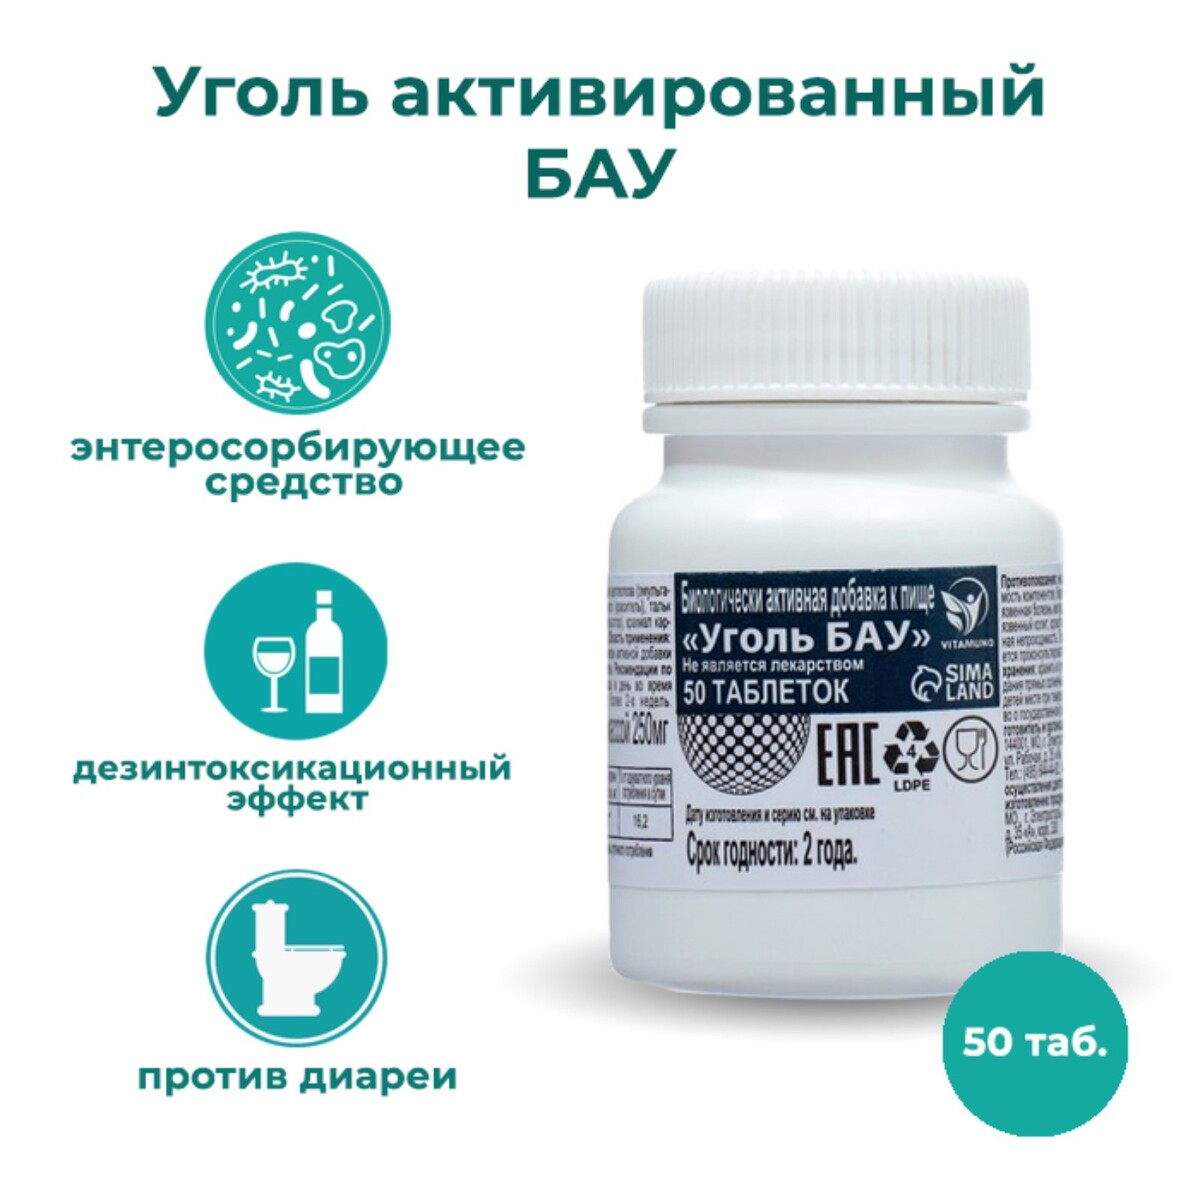 Уголь активированный бау vitamuno, 50 таблеток по 0,25 г крем мыло duru 1 1 активированный уголь 80 г